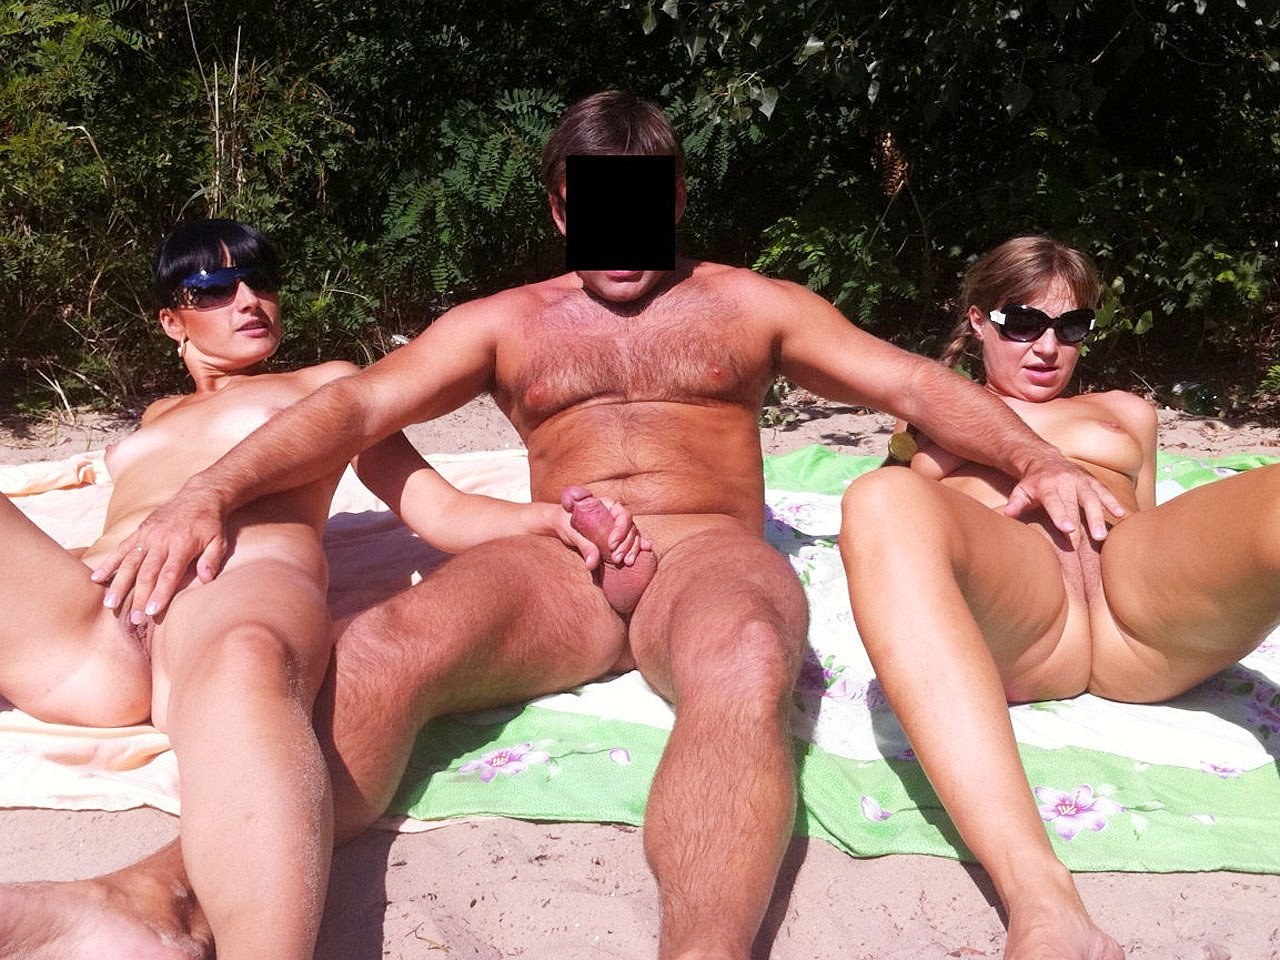 Пара нудистов в отпуске на море - порно фото